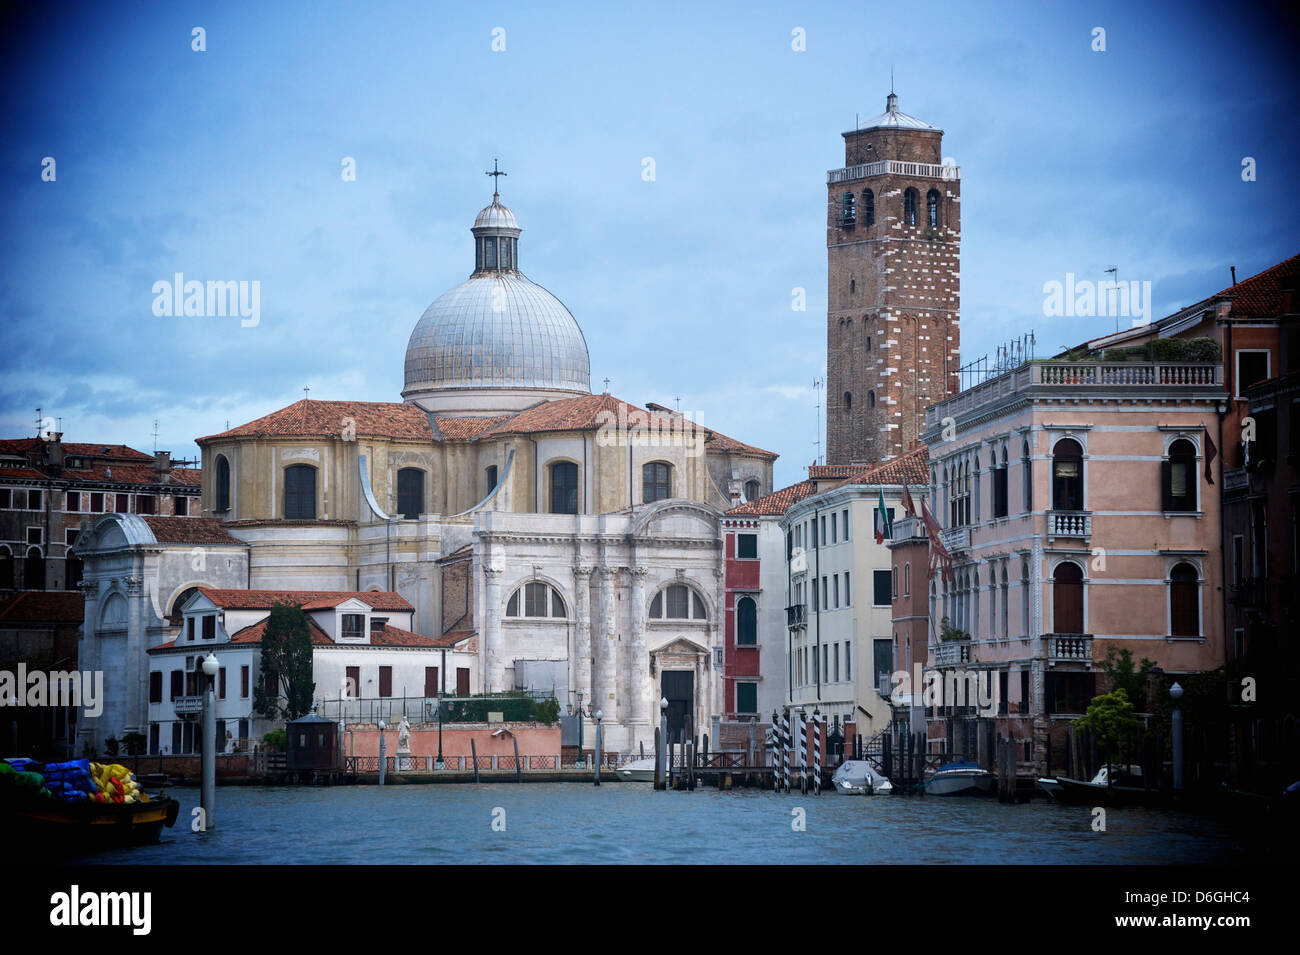 La chiesa e gli edifici sul Canal, Venezia, Veneto, Italia Foto Stock